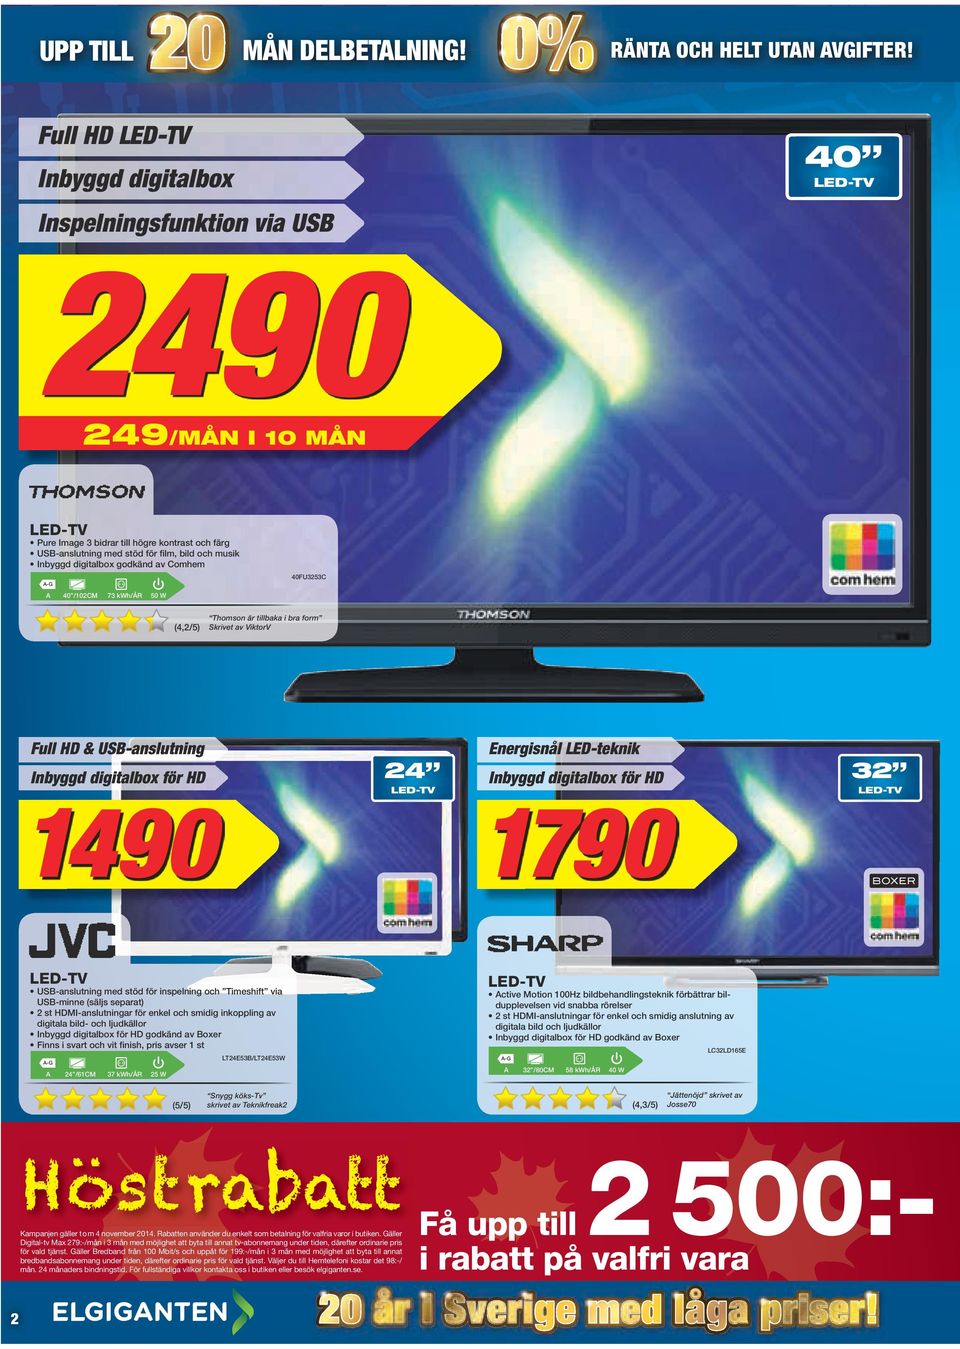 Inbyggd digitalbox godkänd av Comhem A 40 /102CM 73 kwh/år 50 W 40FU3253C (4,2/5) Thomson är tillbaka i bra form Skrivet av ViktorV Full HD & USB-anslutning Inbyggd digitalbox för HD 24 LED-TV